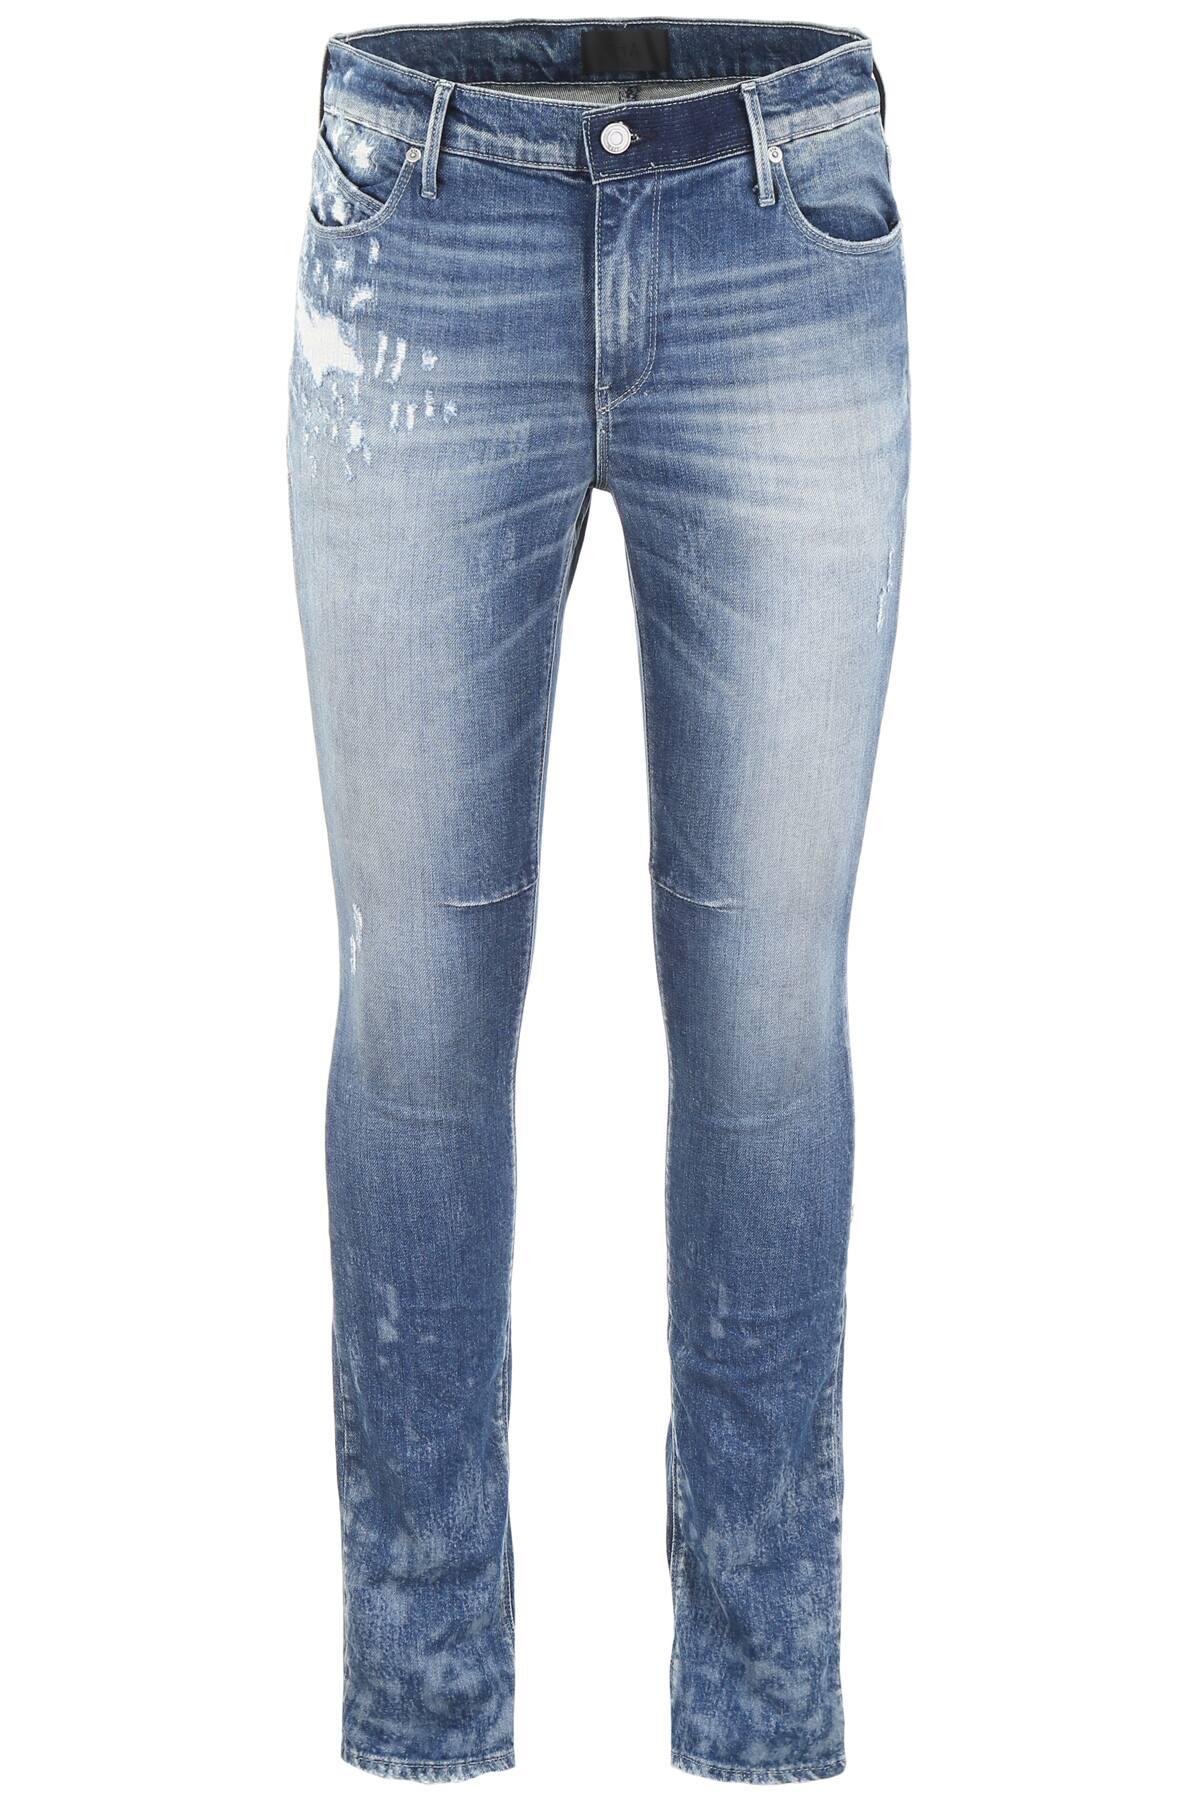 RTA Denim Destroyed Jeans in Blue for Men - Lyst